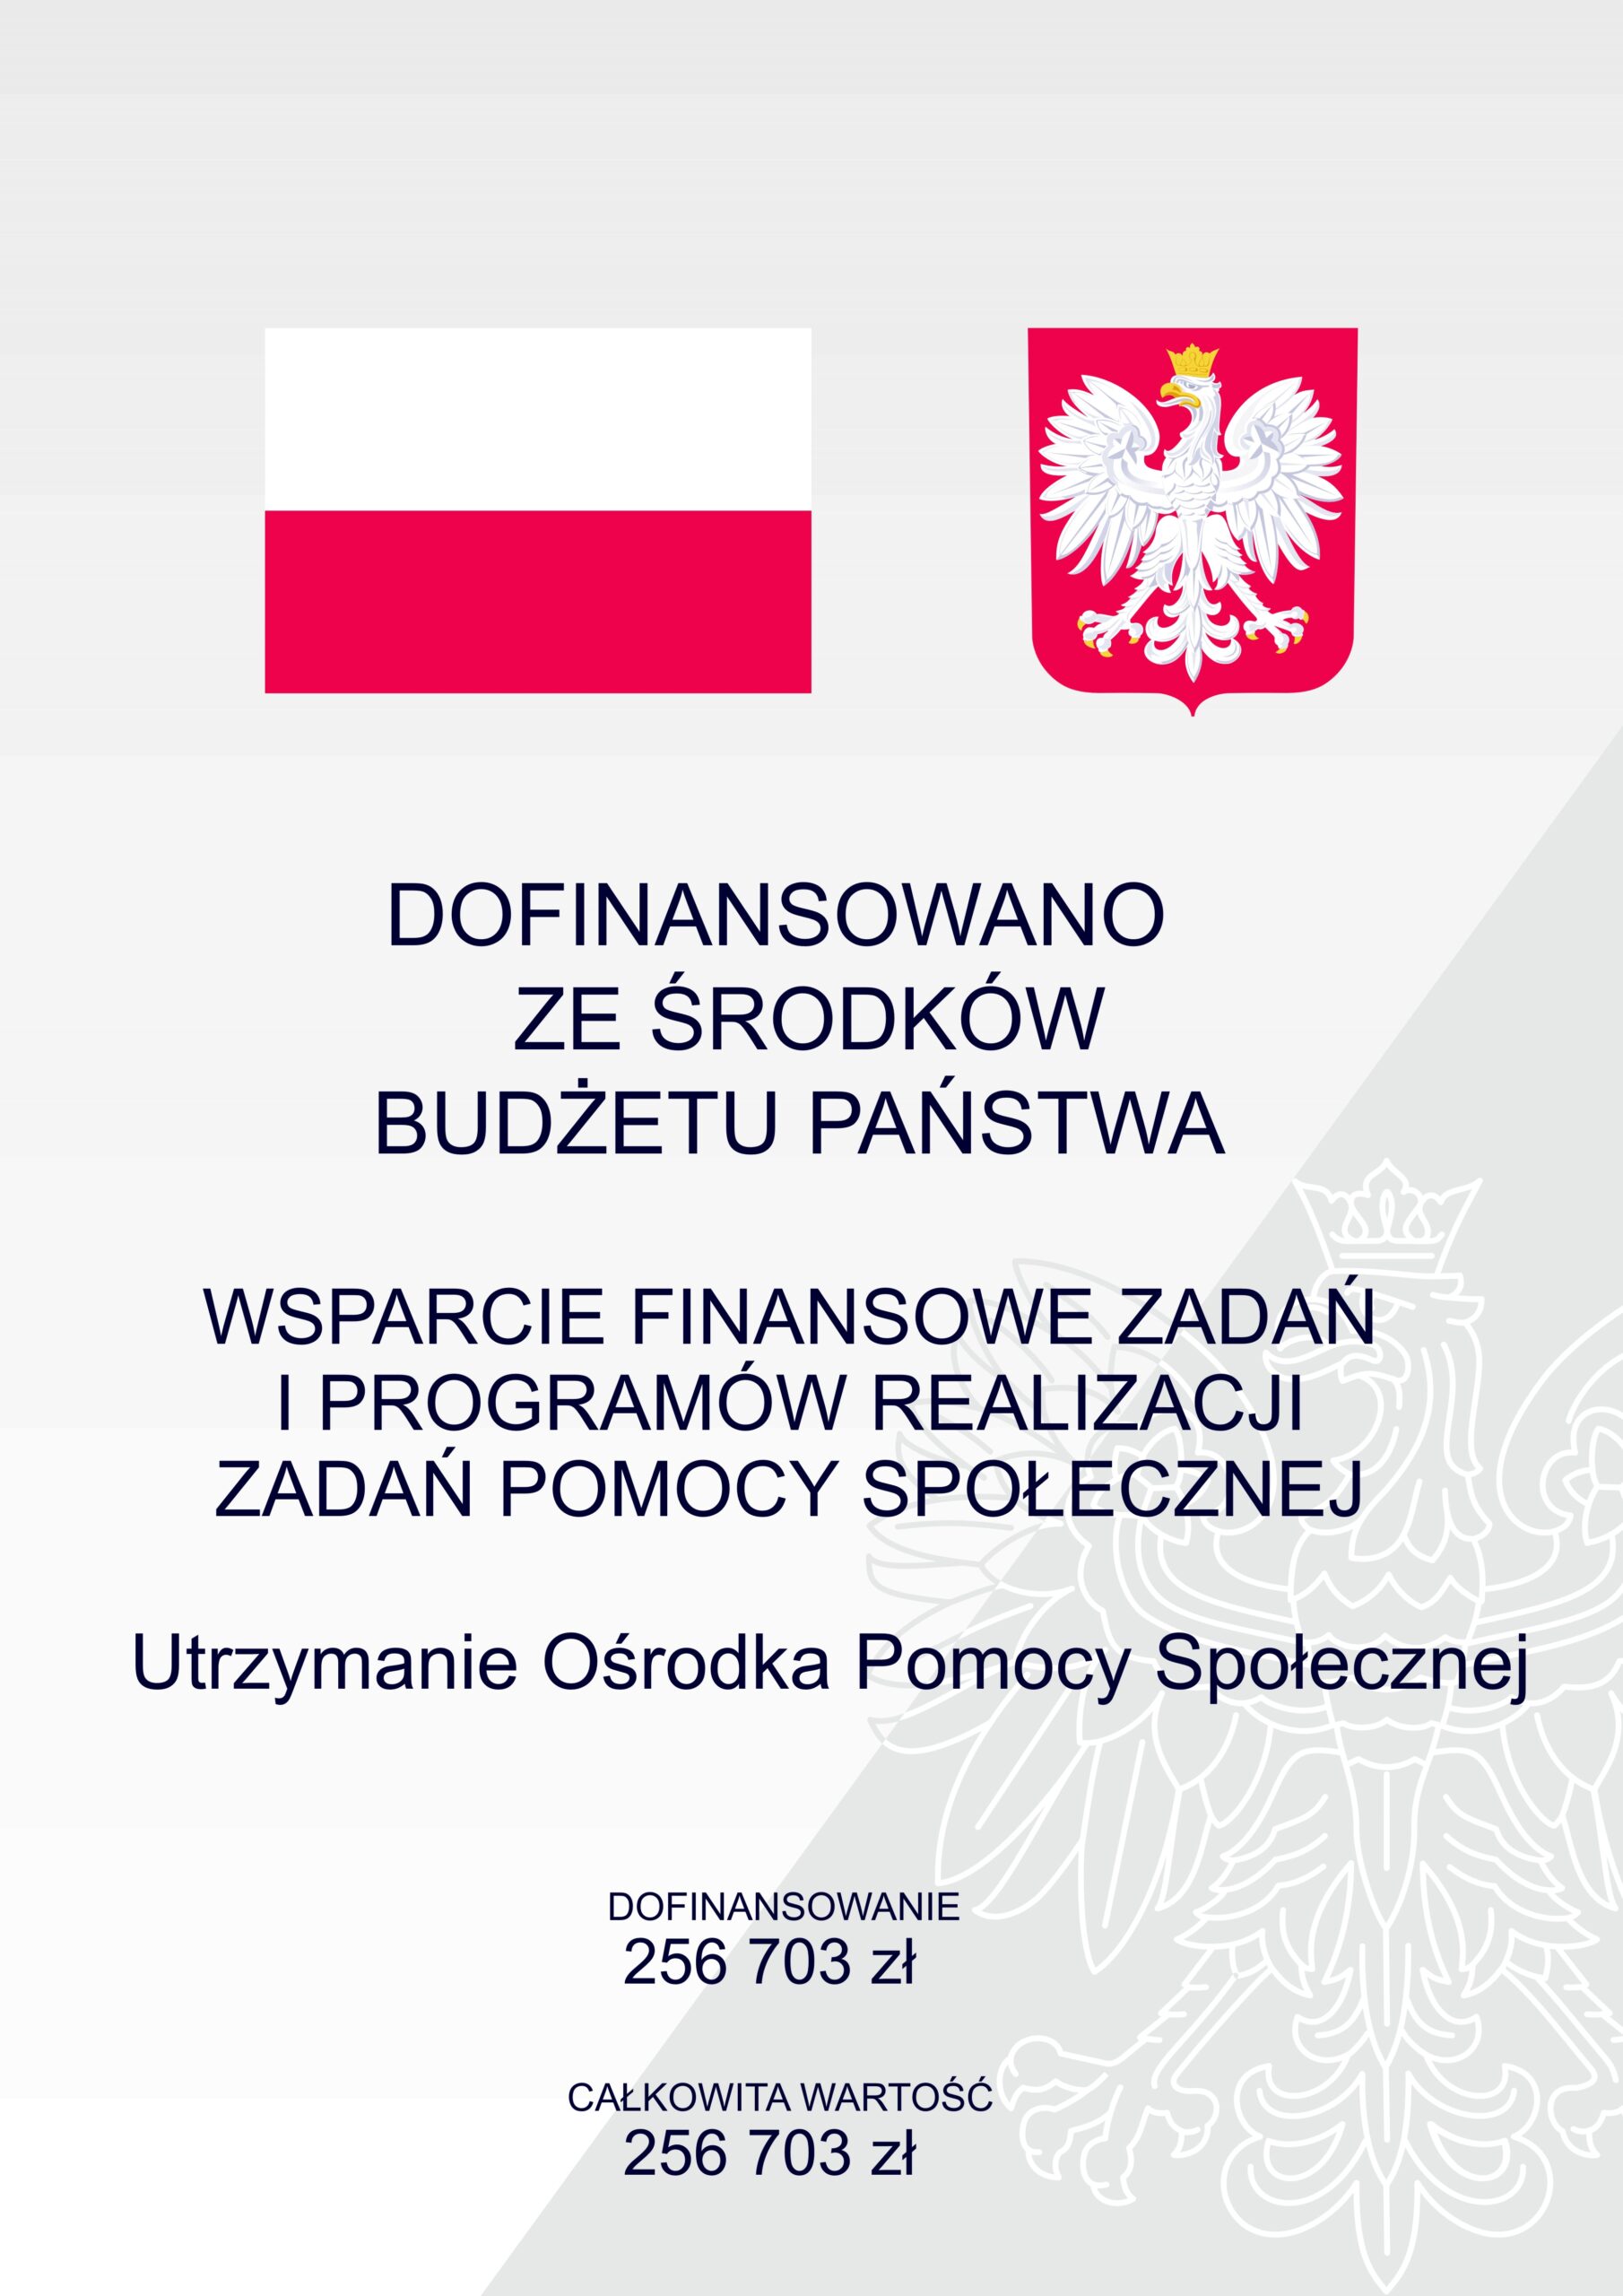 Plakat, na nim flaga i godło Polski, tekst: Dofinansowano ze środków budżetu państwa, wsparcie finansowe zadań i programów realizacji zadań pomocy społecznej, utrzymanie Ośrodka Pomocy Społecznej, dofinansowanie 256 703 zł, całkowita wartość 256 703 zł